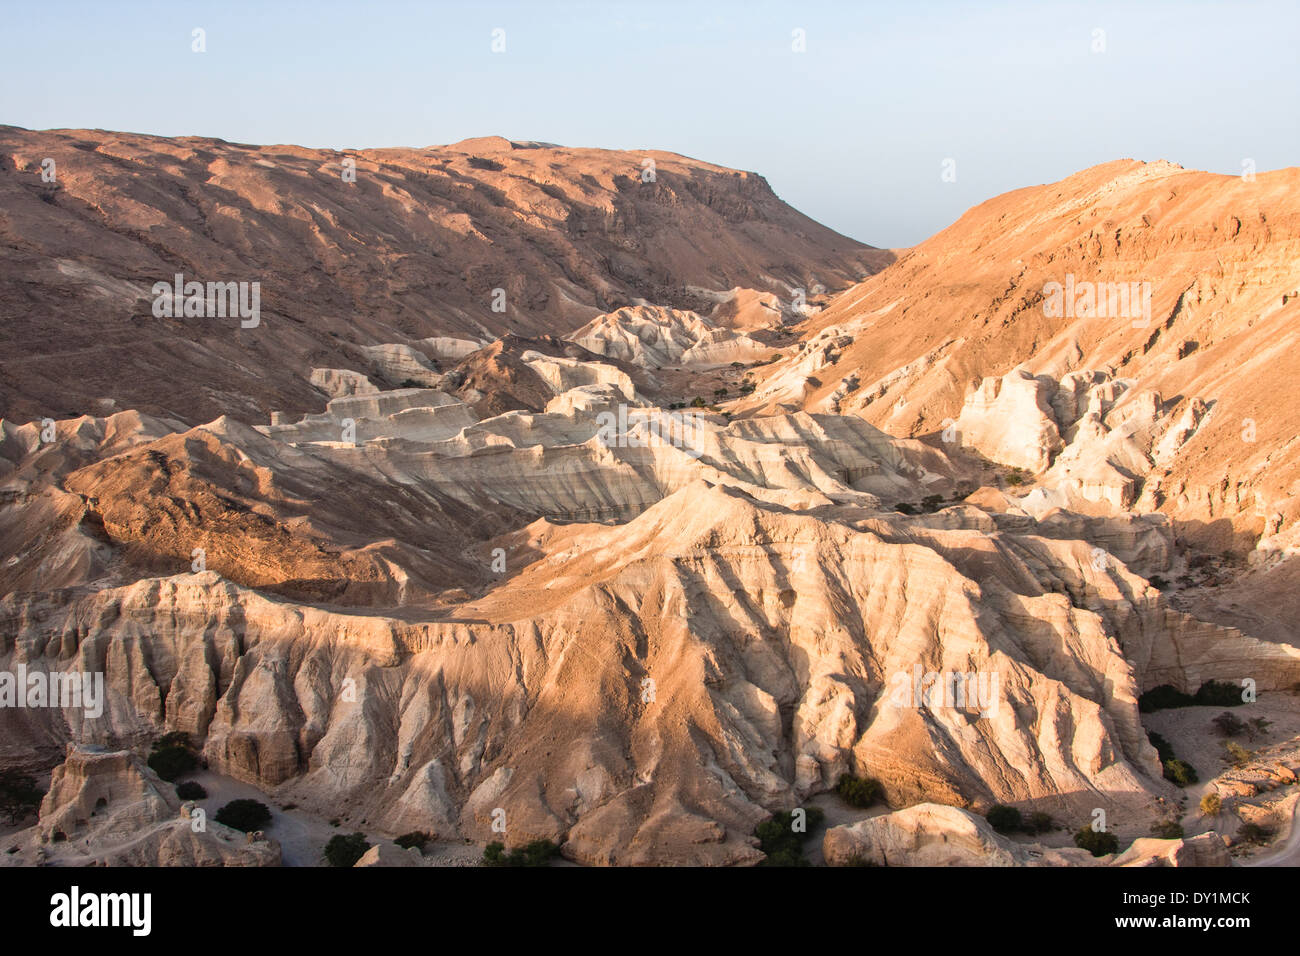 Desert Landscape, Judea Desert, Israel Stock Photo